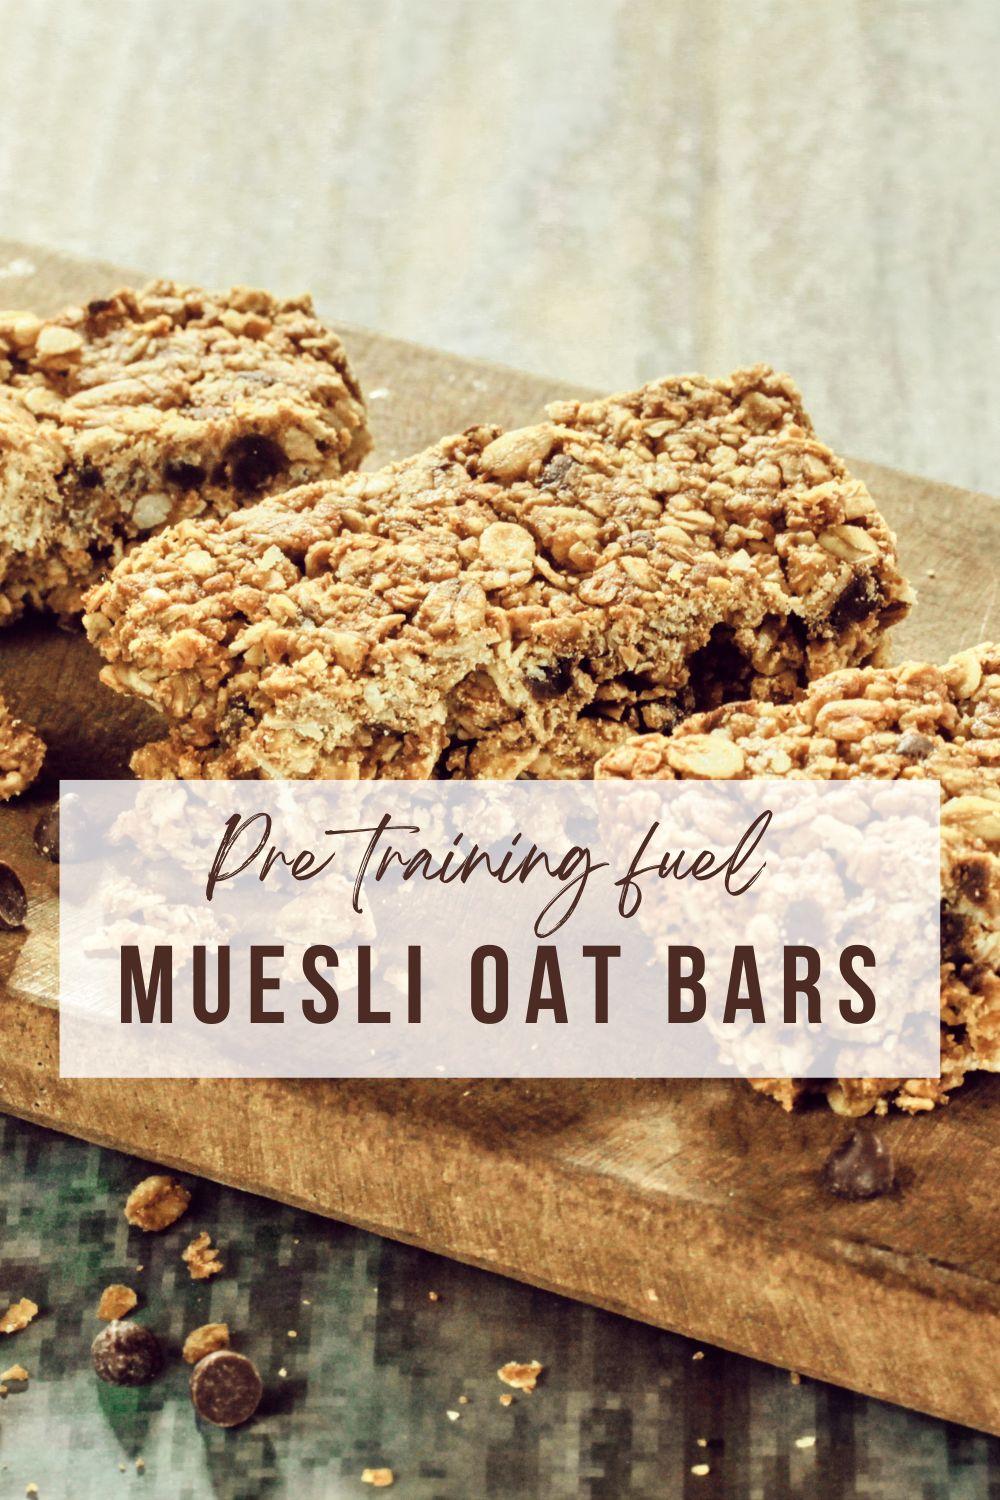 Oat muesli bars: perfect grab and go training fuel